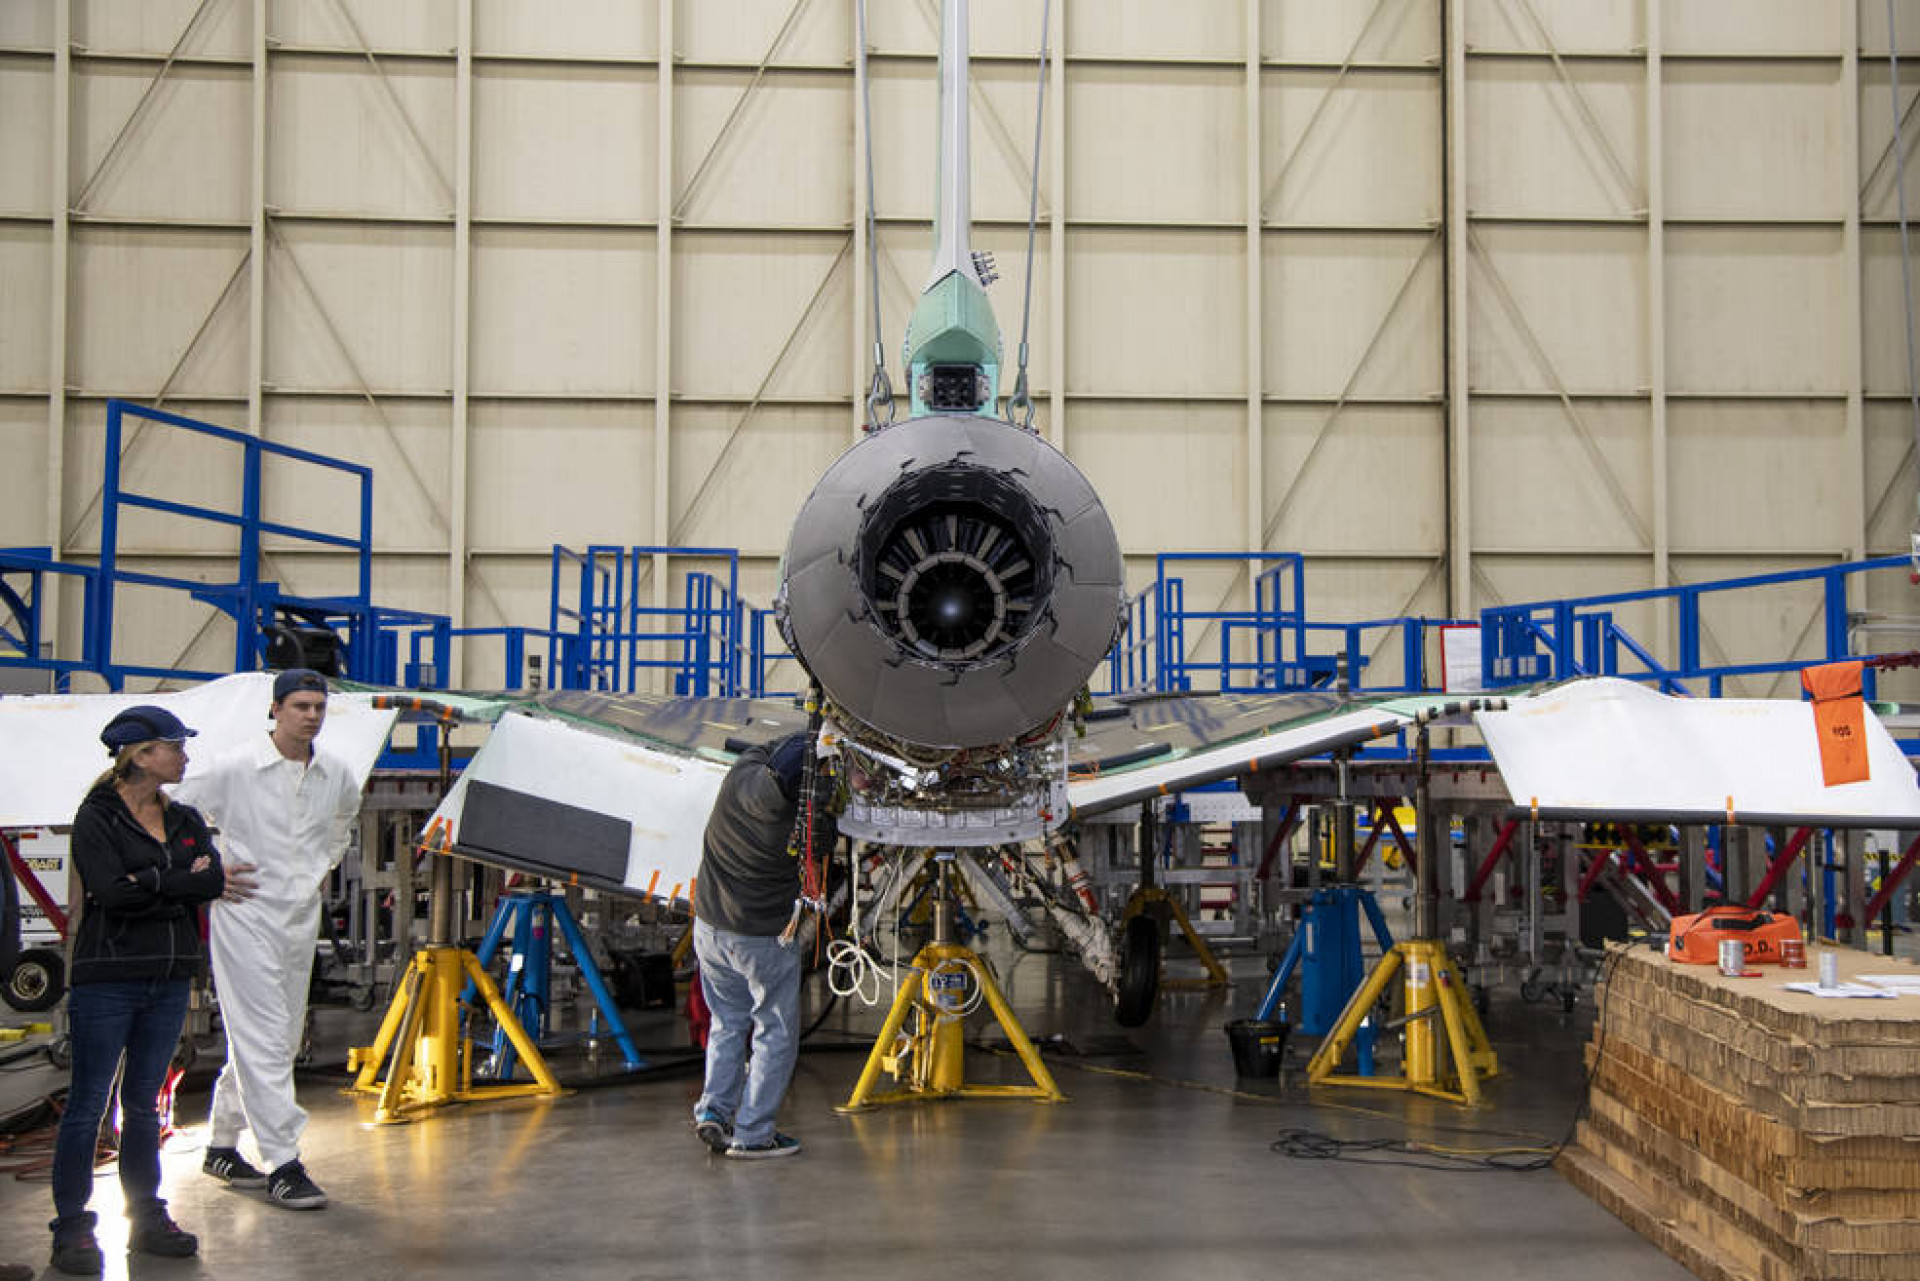 یک موتور GE Aviation F414-GE-100 در هواپیمای مافوق صوت بی صدا X-59 ناسا در تاسیسات Skunk Works لاکهید مارتین در پالمدیل، کالیفرنیا نصب شده است. این موتور 13 فوتی دارای 22000 پوند انرژی نیروی محرکه است و X-59 را به سرعت 1.4 ماخ می رساند. 